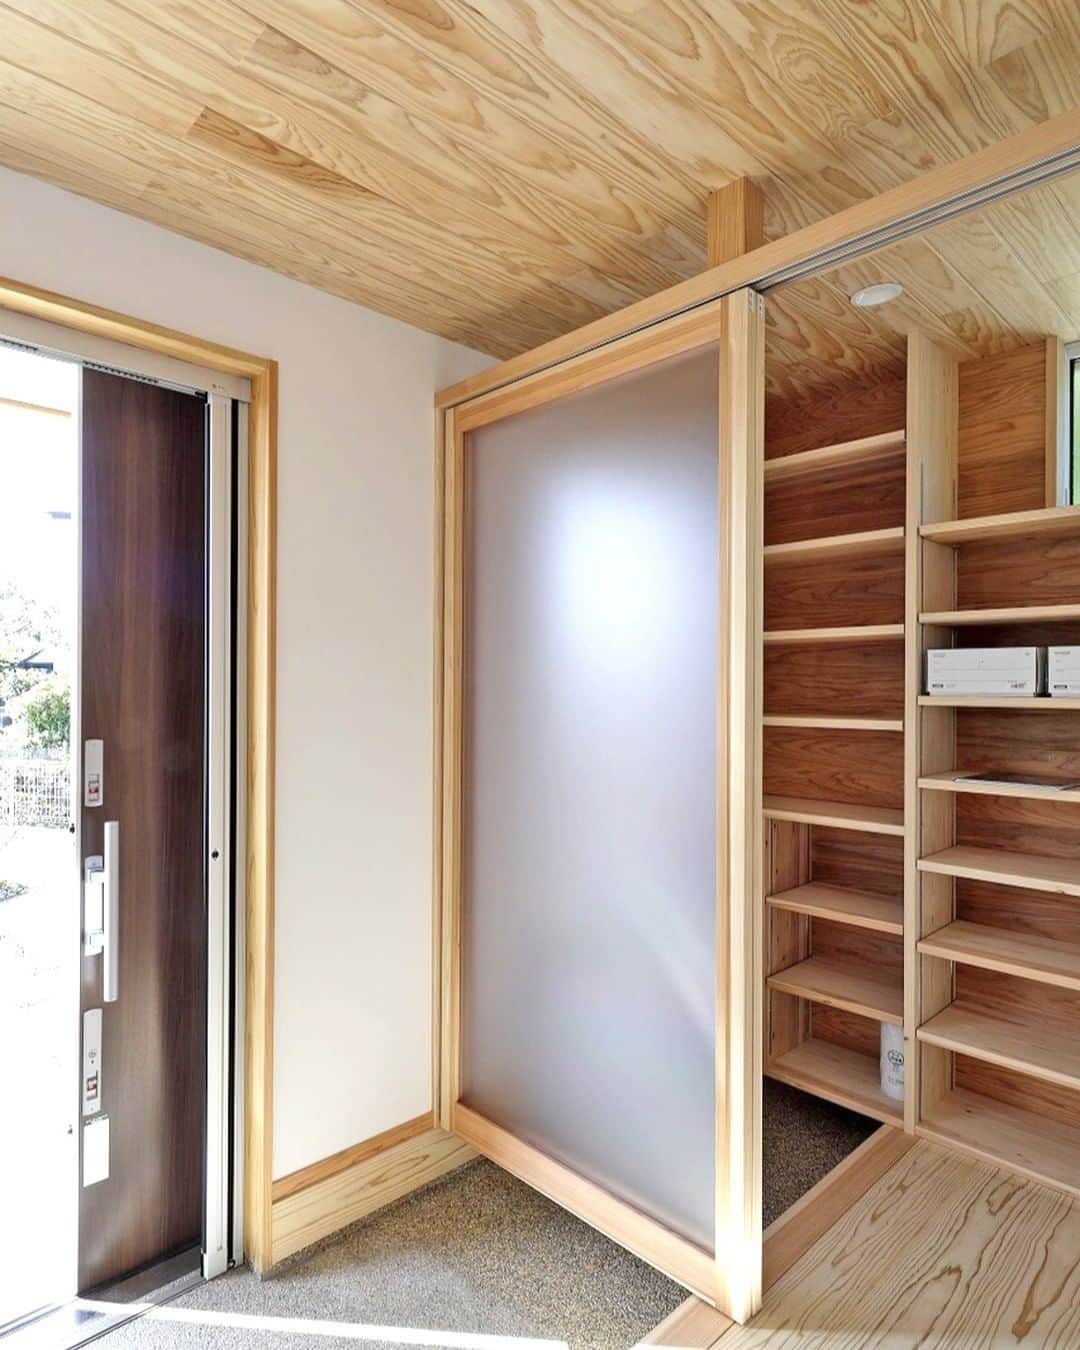 Yasuhiro Arimuraのインスタグラム：「玄関は、お客様用と家族用で分けてあります。 急な来客が来ても、扉ですぐに隠せる作りです。透過性があるすりガラスを使った扉なので光を通し、明るい玄関になります。 家族用には、天井まである大きな造作建具の棚で収納はバッチリ。  玄関扉を開き戸にするか引き戸にするかというのは、それぞれの家族の好み次第。 平屋の場合だと、比較的引き戸が多い傾向があるようです。 玄関には、造作のベンチと手すりを付けて、靴の脱ぎ履きがしやすいようにしました。  more photos... 👉 @yasuhiro.arimura #光と風 #sumais #リビング #明るいリビング #注文住宅 #家づくり #平屋のお家 #造作建具 #ウッドデッキ #マイホーム #マイホーム計画 #木の家 #住まい #新築 #オーダーメイド住宅 #鹿児島 #工務店 #工務店がつくる家 #工務店だからつくれる家 #設計事務所 #子育て #自然素材 #賃挽き製材 #デザイン #暮らし #暮らしを楽しむ #シンプルな暮らし #丁寧な暮らし #田舎暮らし #instahouse」